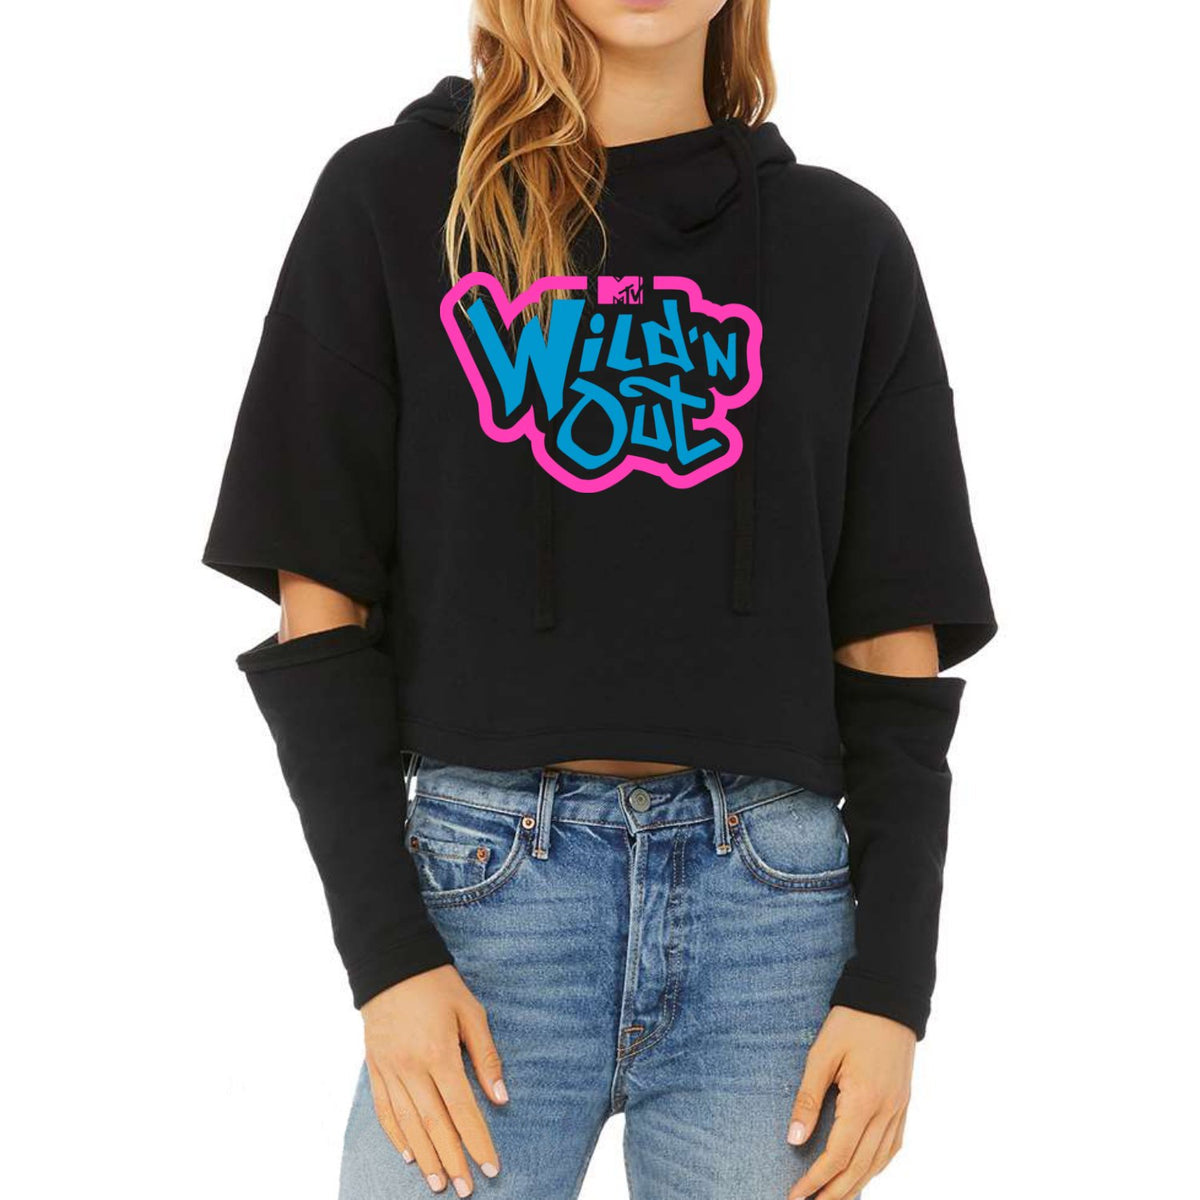 Wild 'N Out Neon Logo Women's Cut Out Hooded Sweatshirt